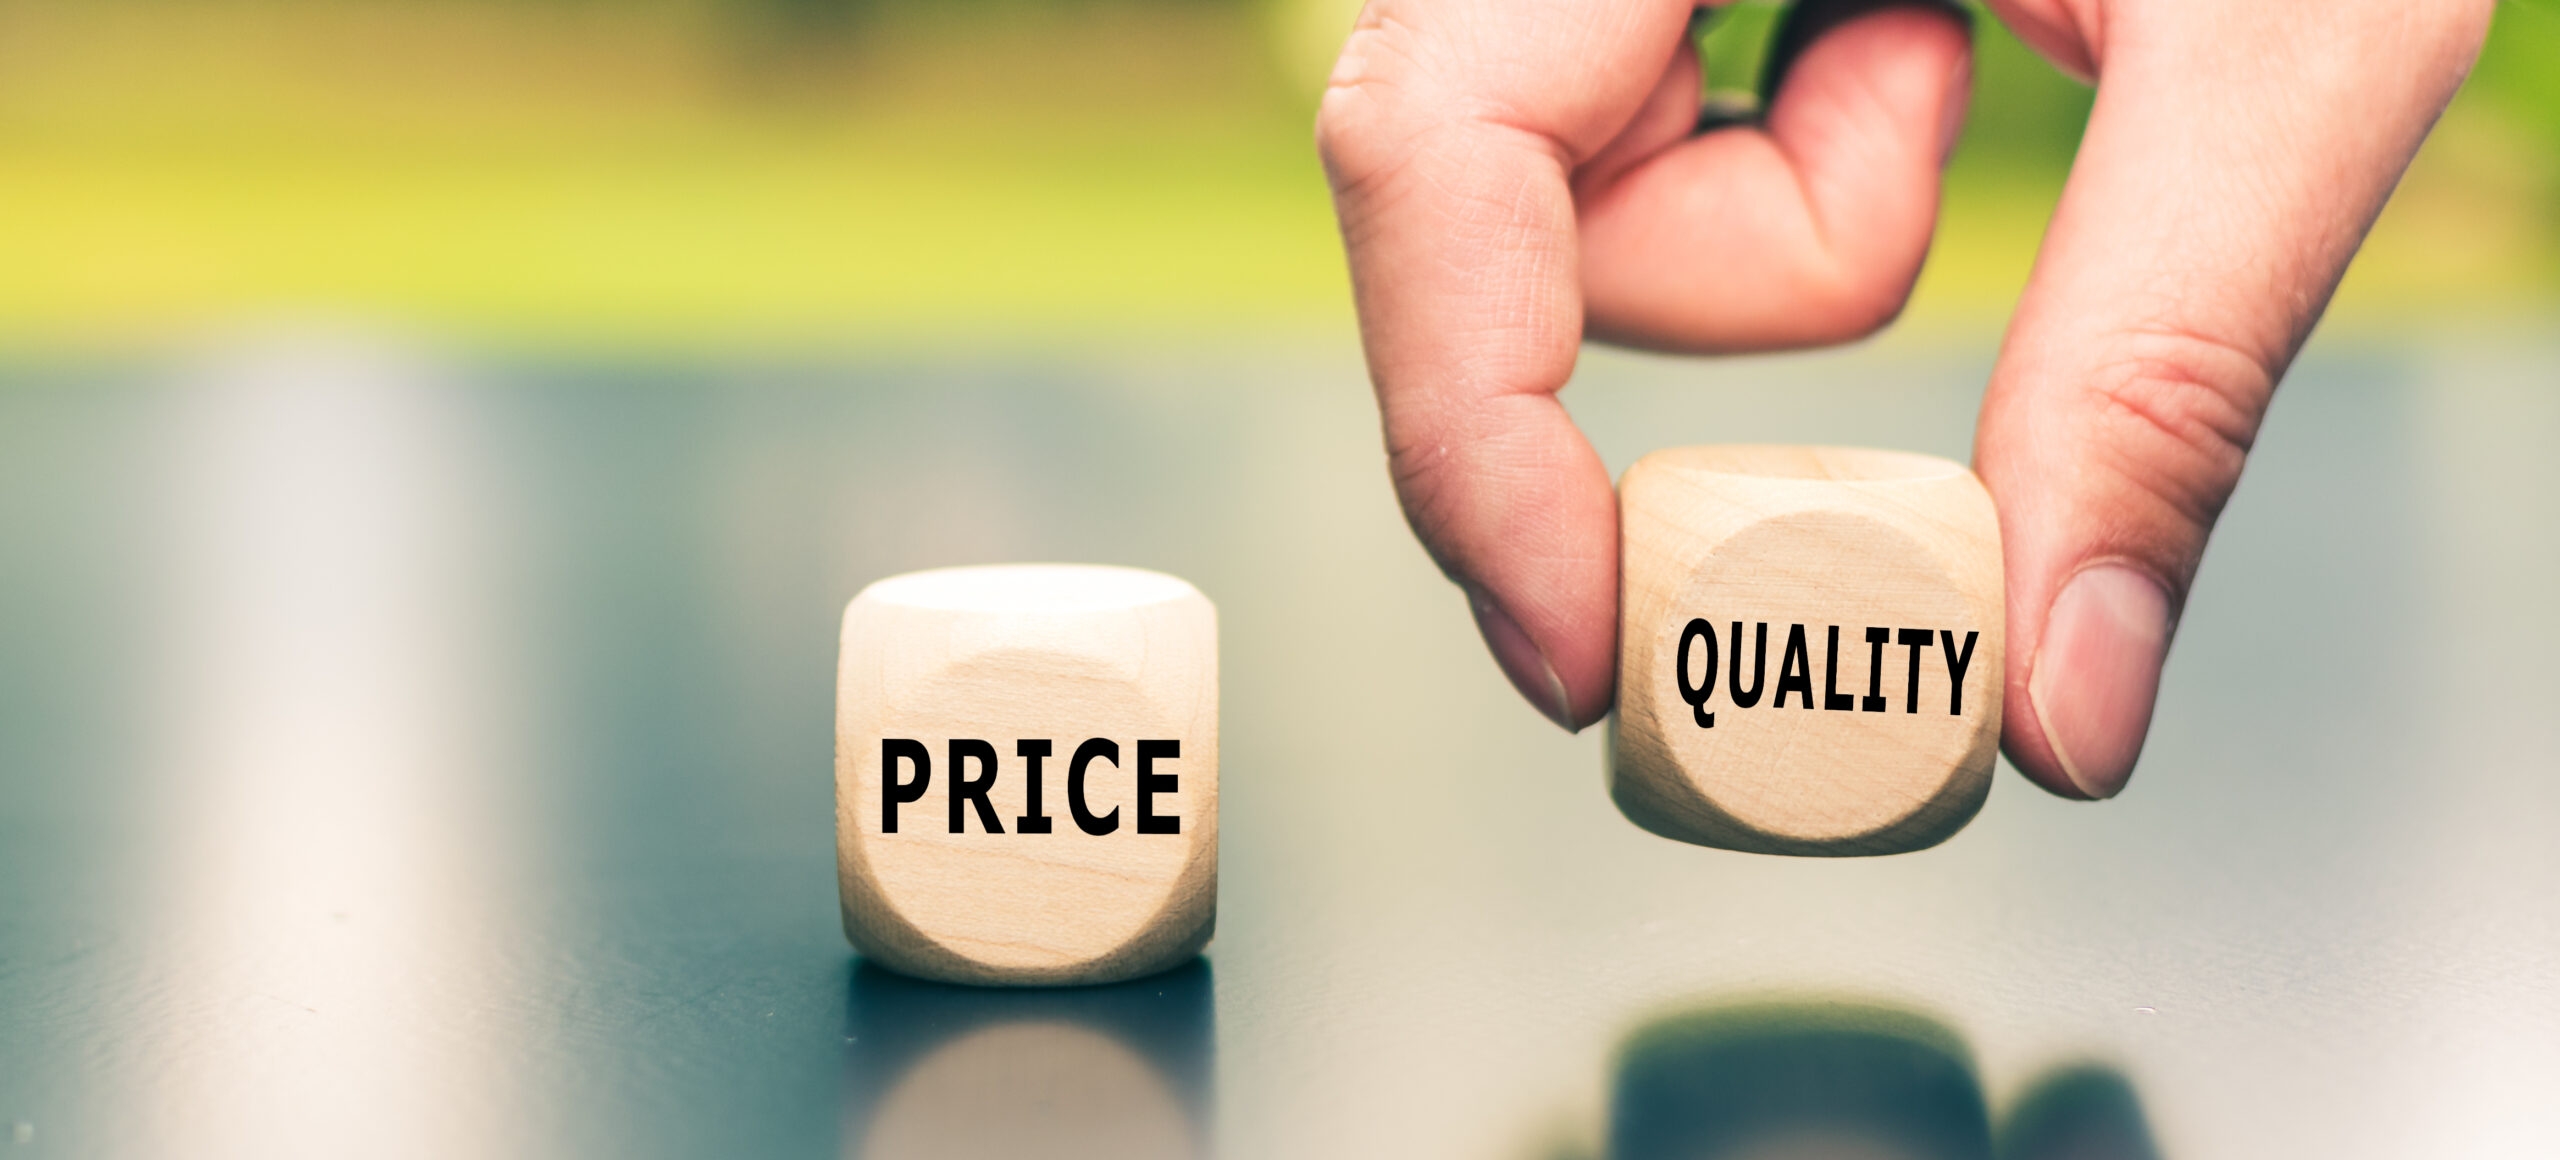 توجه به کیفیت و قیمت در راهنمای خرید 